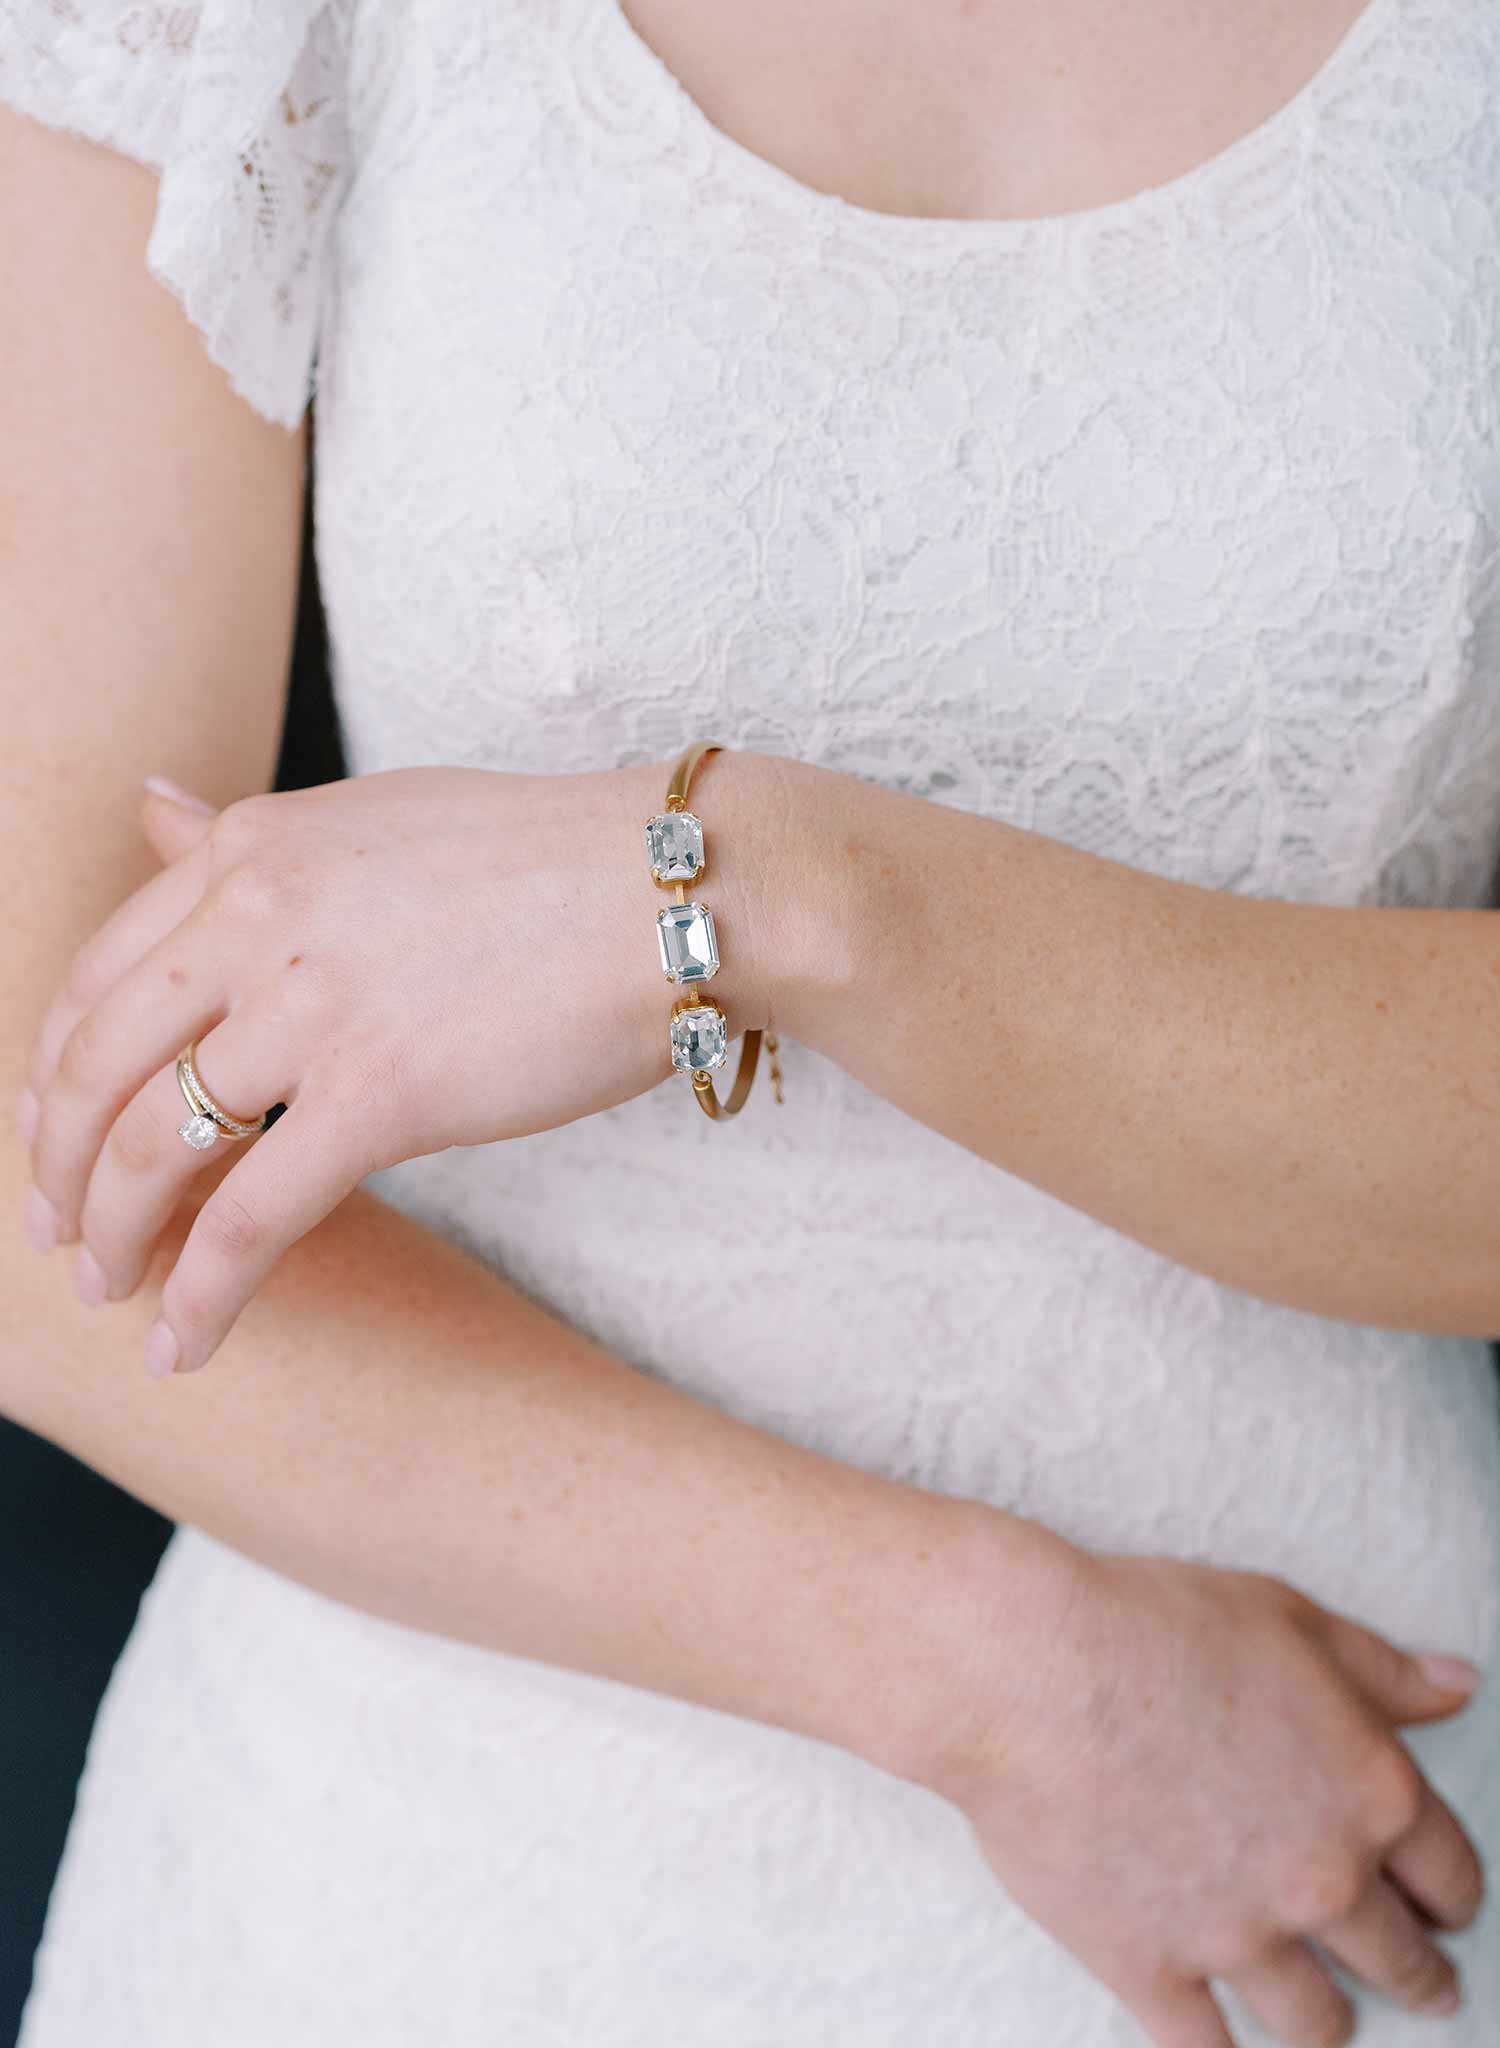 Octagon crystal bridal bracelet - Style #2380